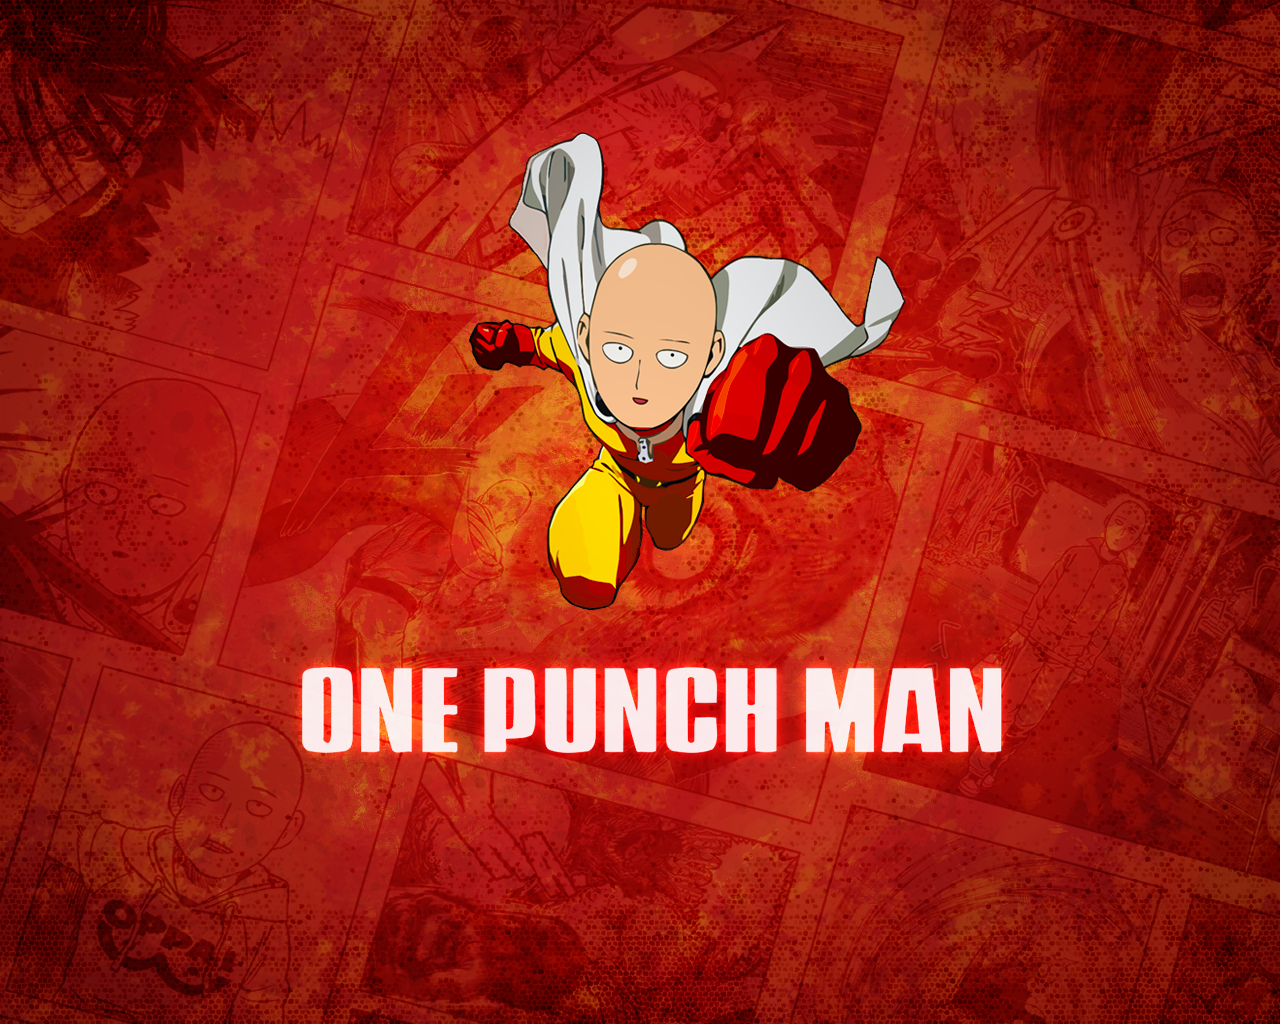 fond d'écran one punch man,dessin animé,rouge,dessin animé,illustration,personnage fictif